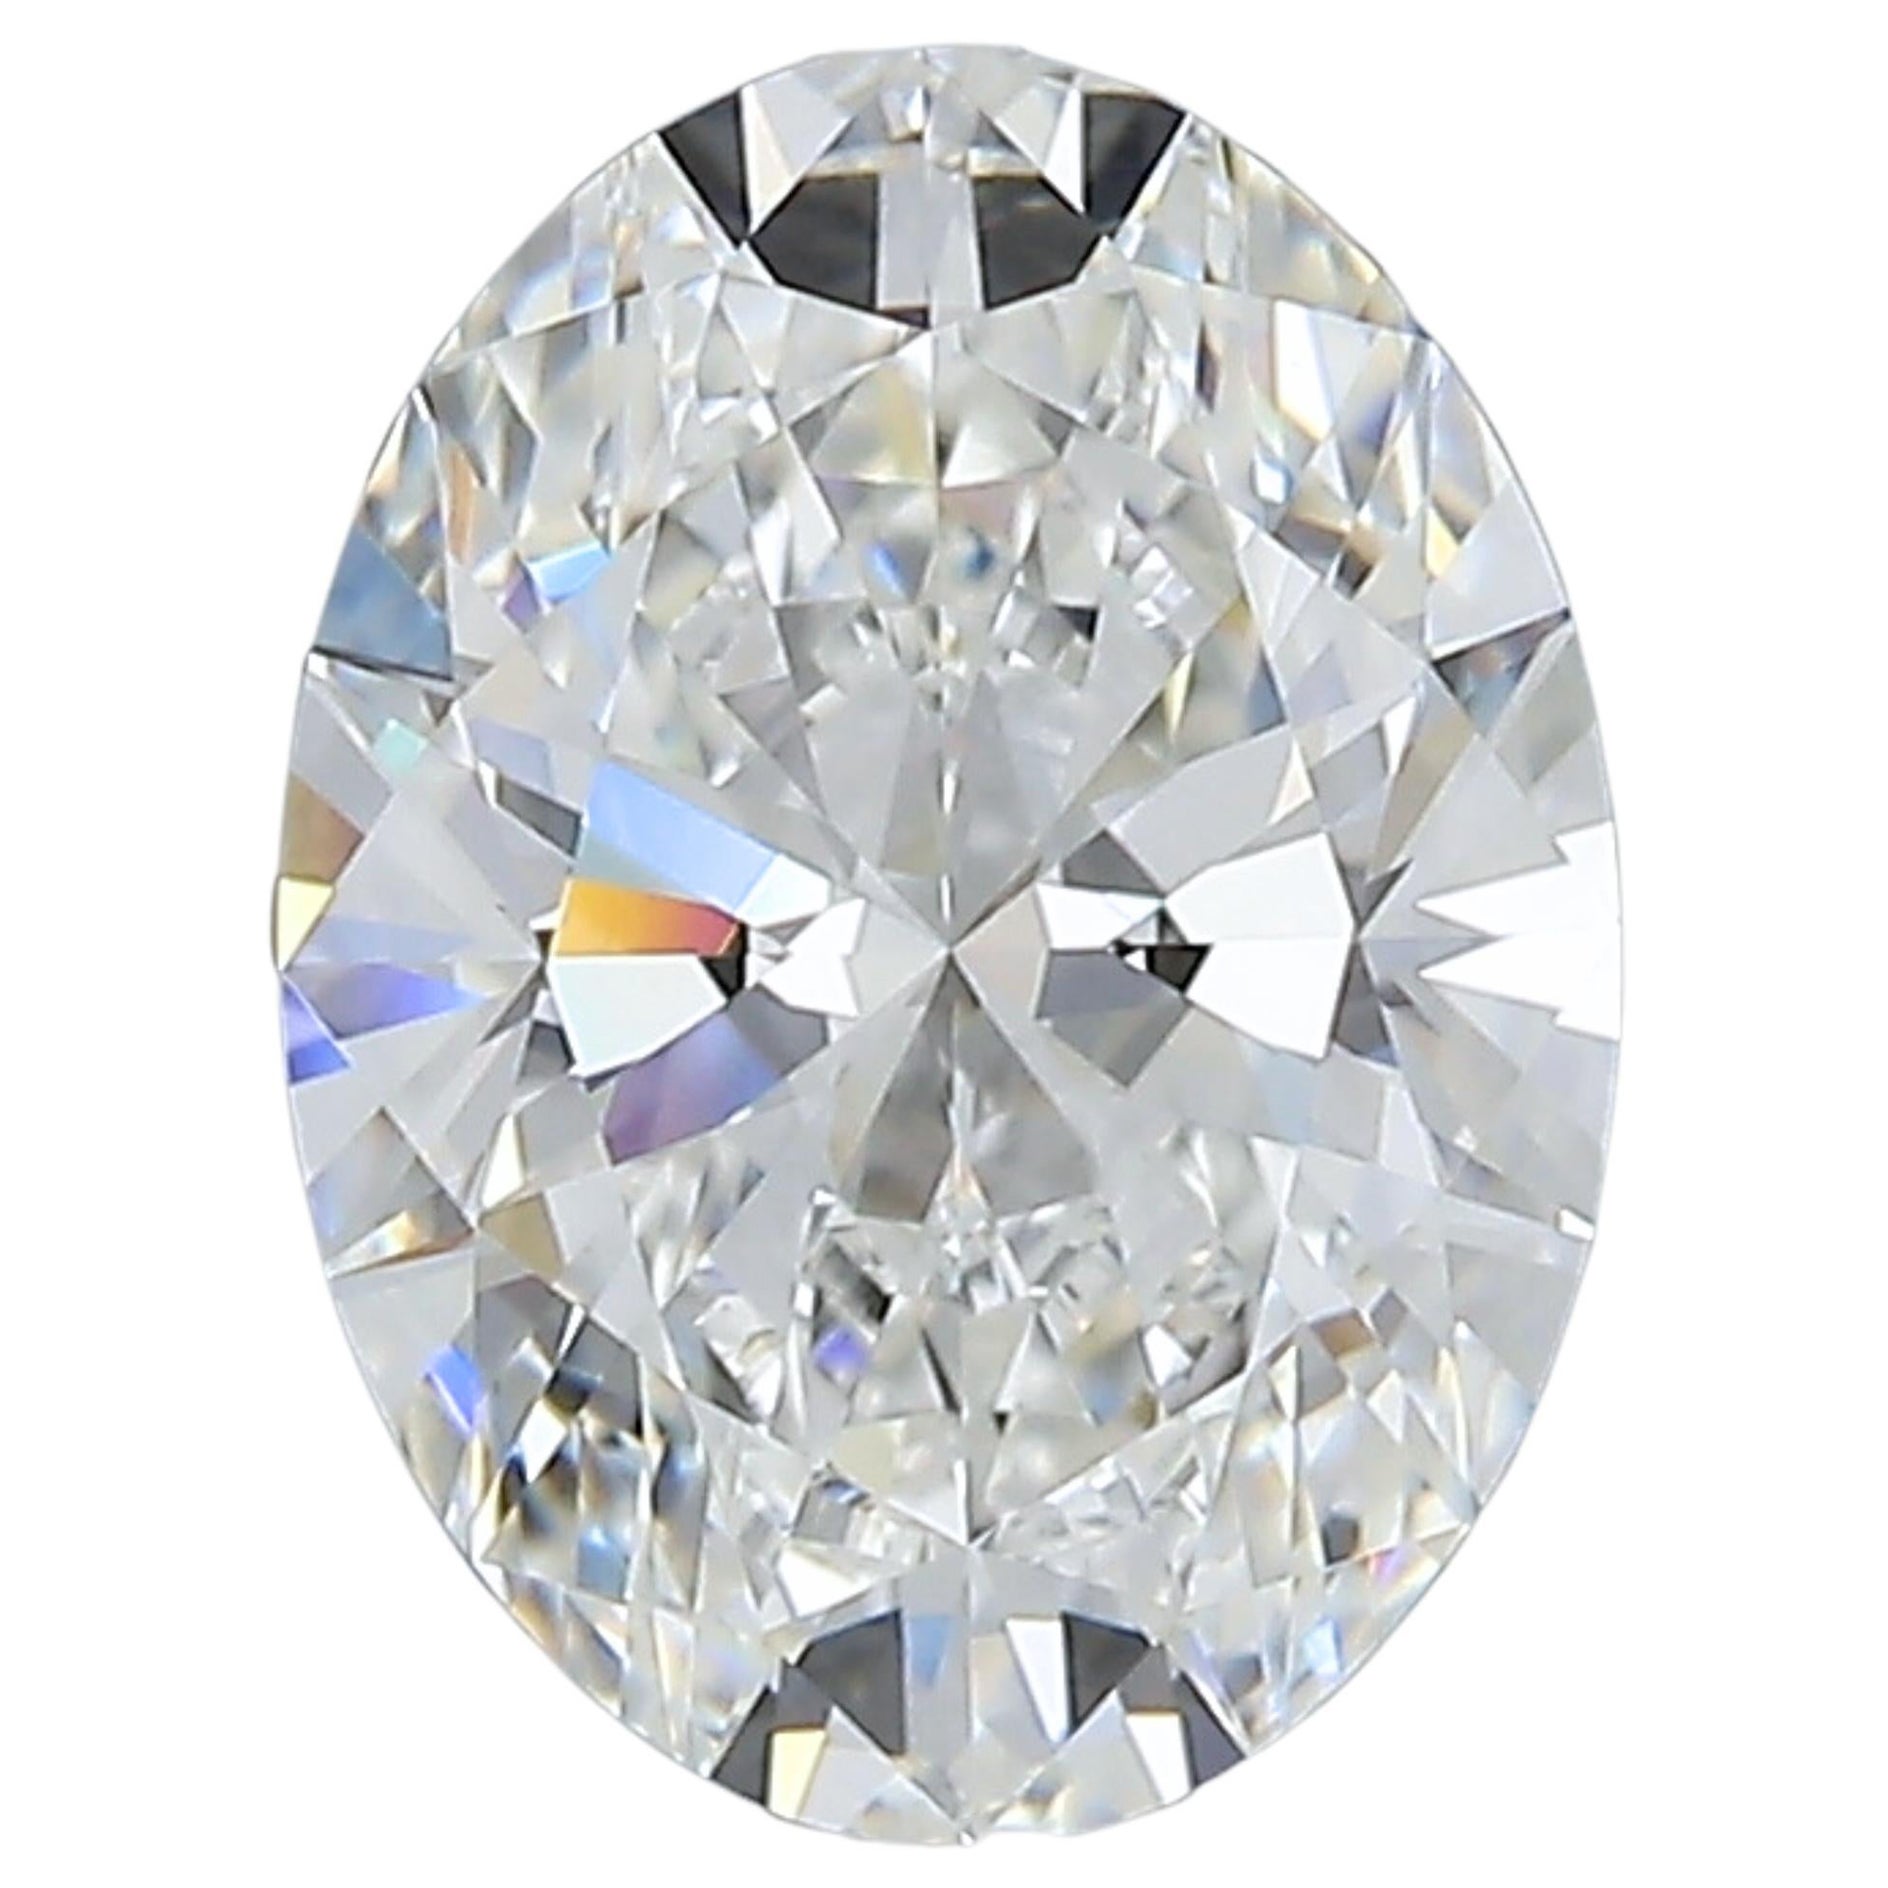 Sparkling 1.73 carat Oval Cut Brilliant Diamond For Sale